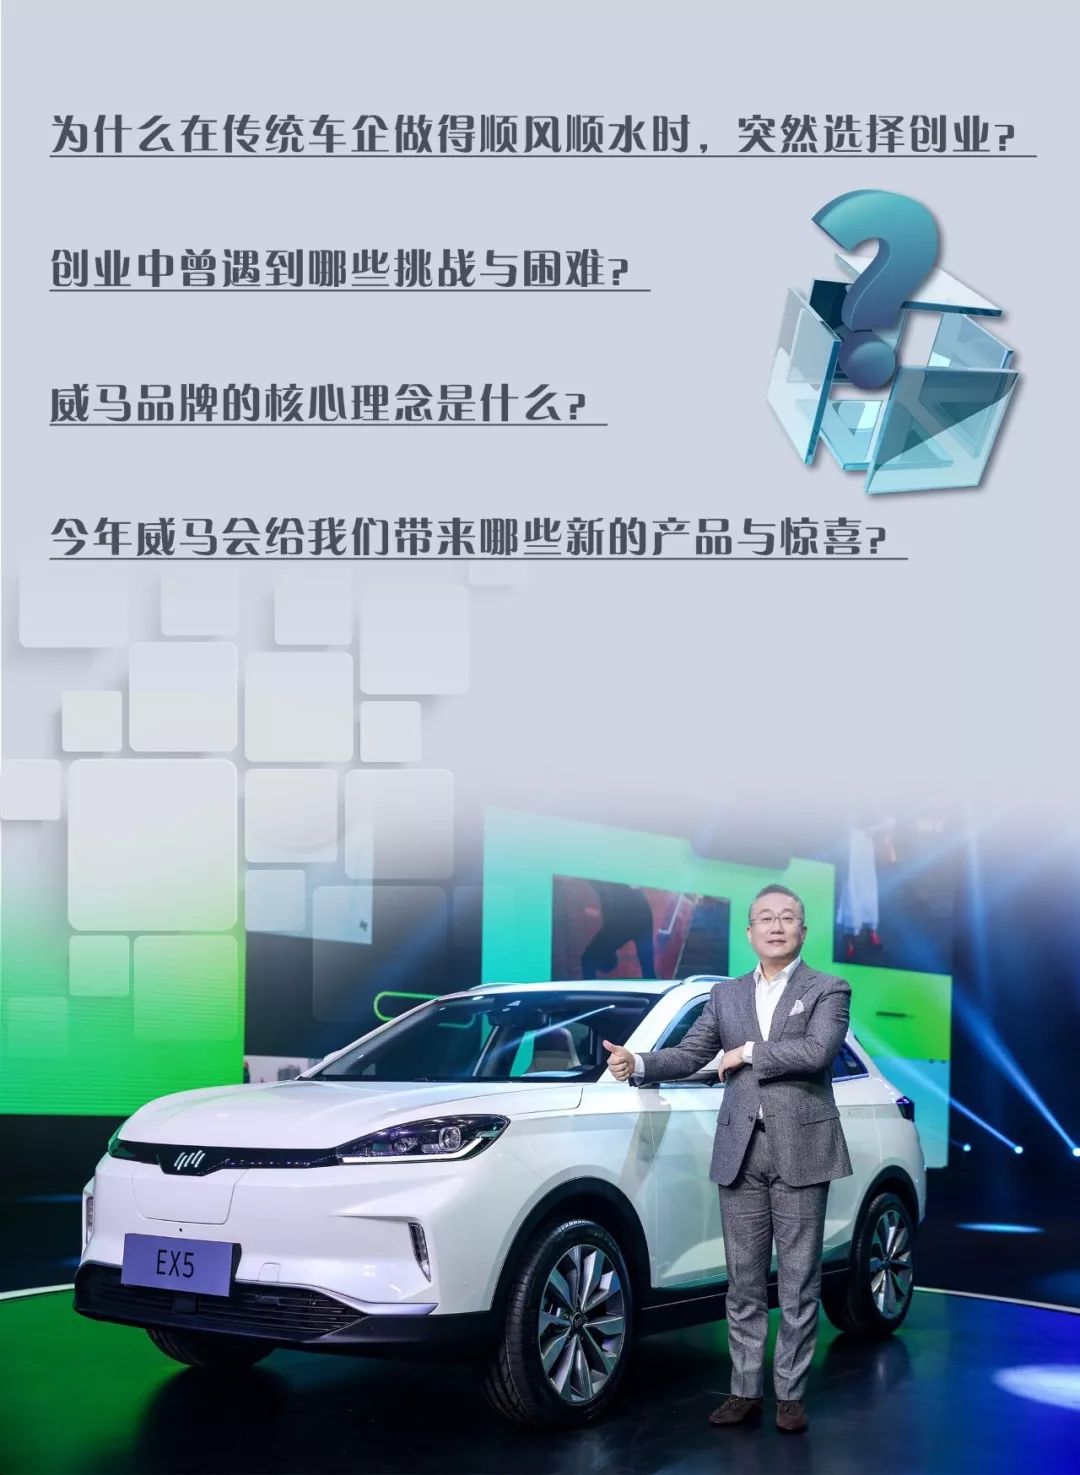 威马汽车董事长沈晖：威马要造用户用得起，用得爽的智能电动车